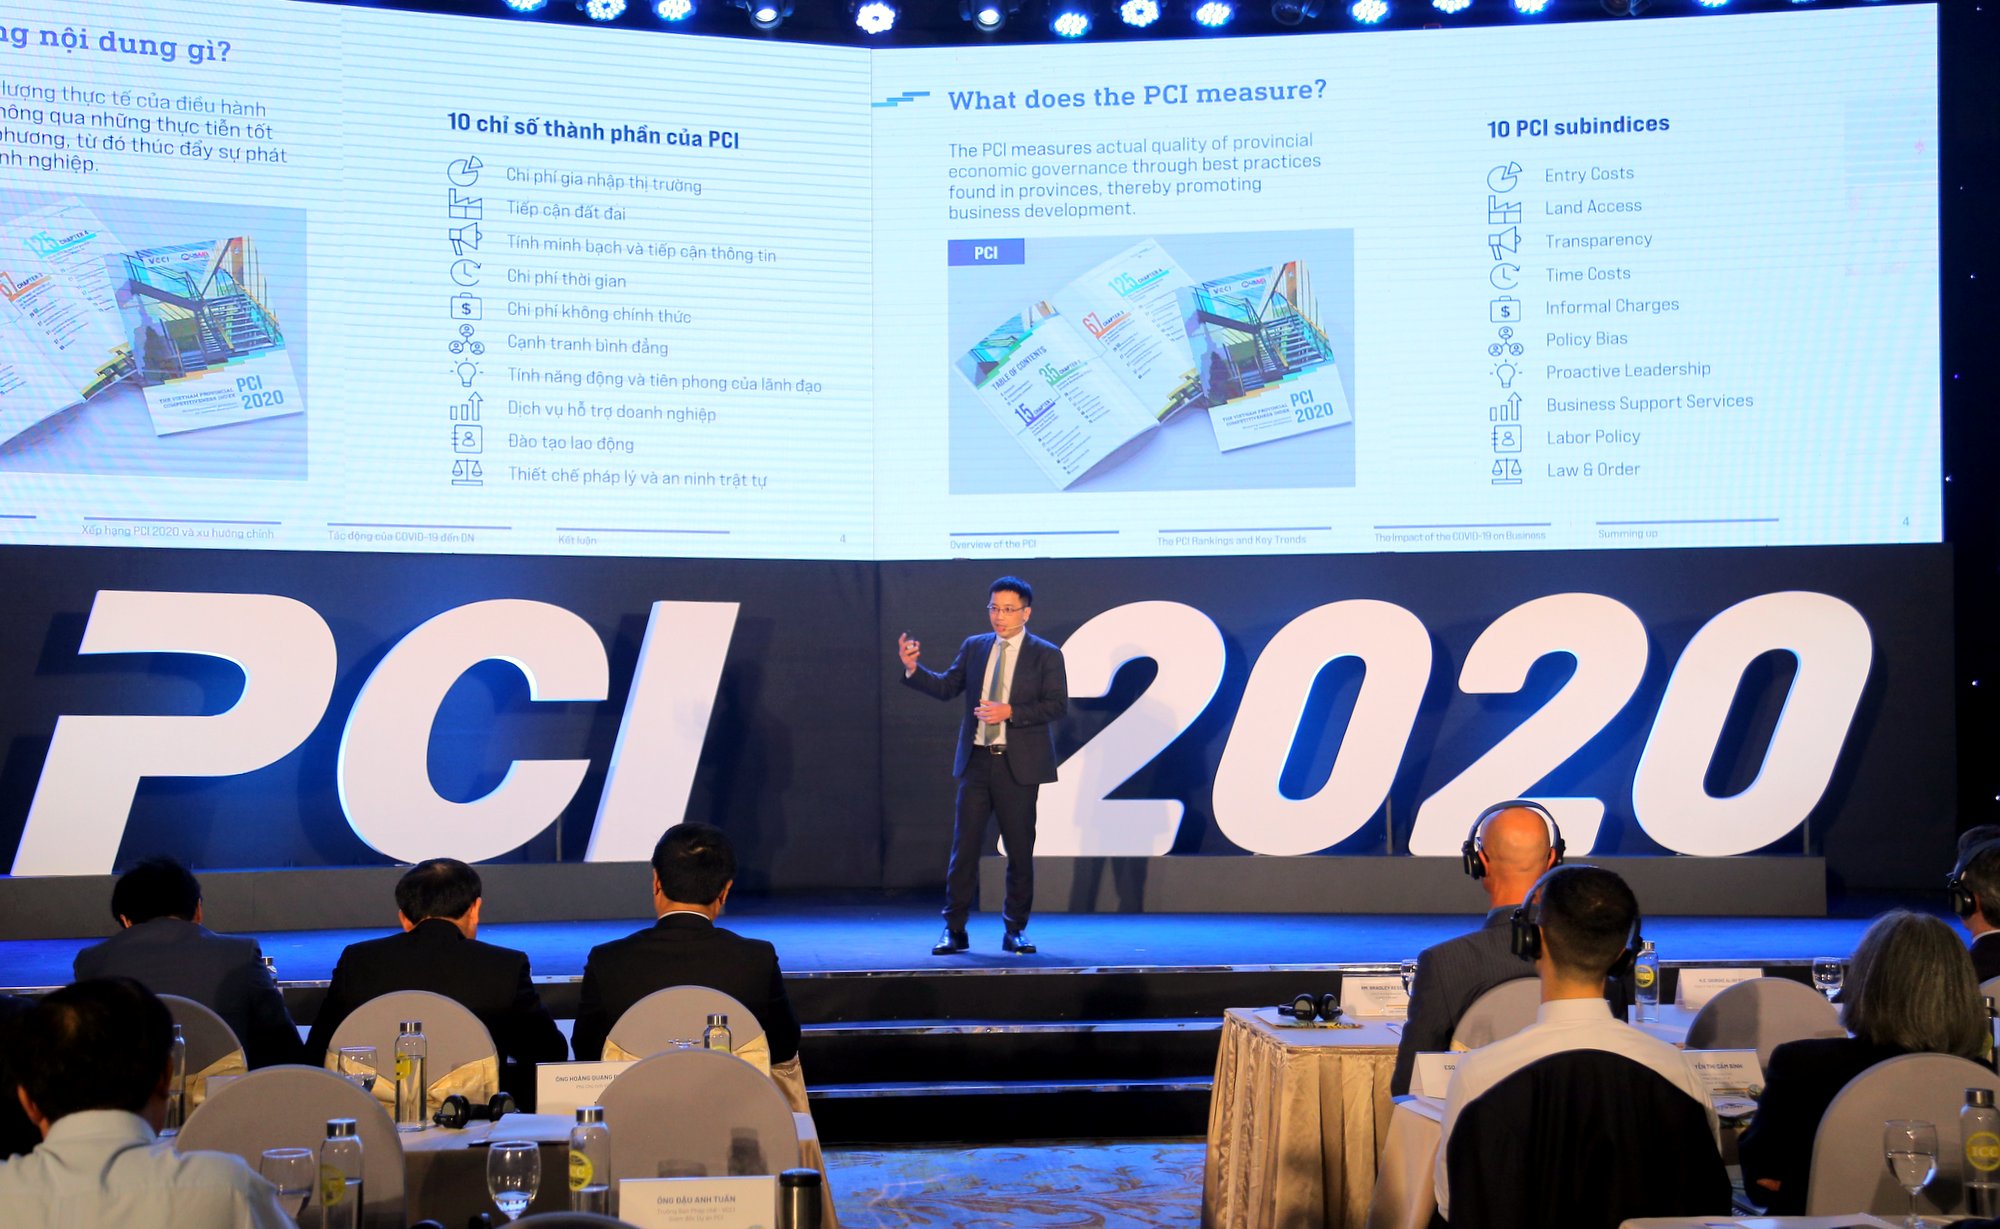 TS Đậu Anh Tuấn, Trưởng ban Pháp chế VCCI, phân tích sơ bộ các chỉ số trong bảng xếp hạng PCI năm 2020.